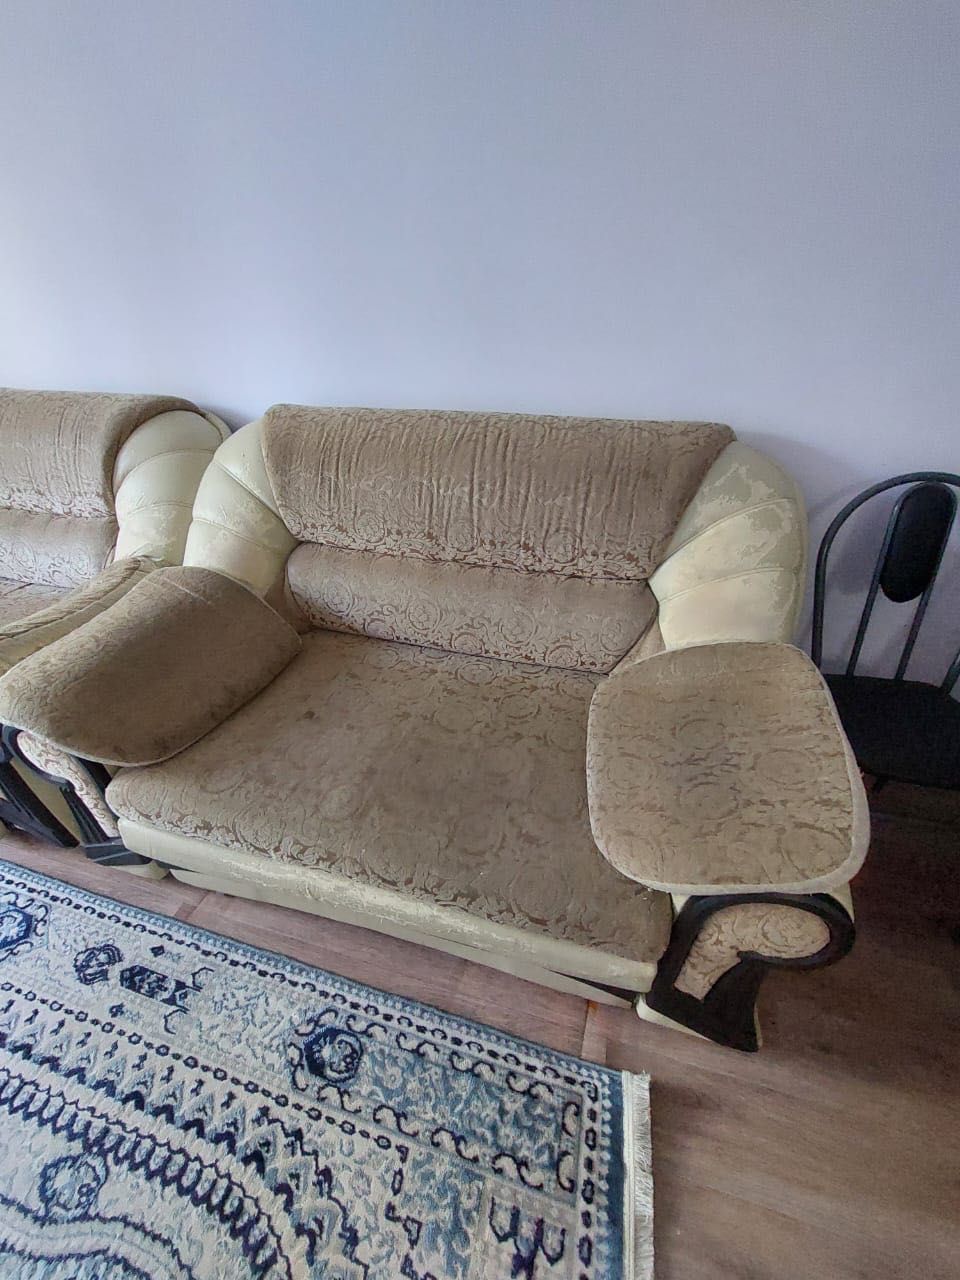 Продается диван, в хорошем качестве, длина составляет 1,5 метра